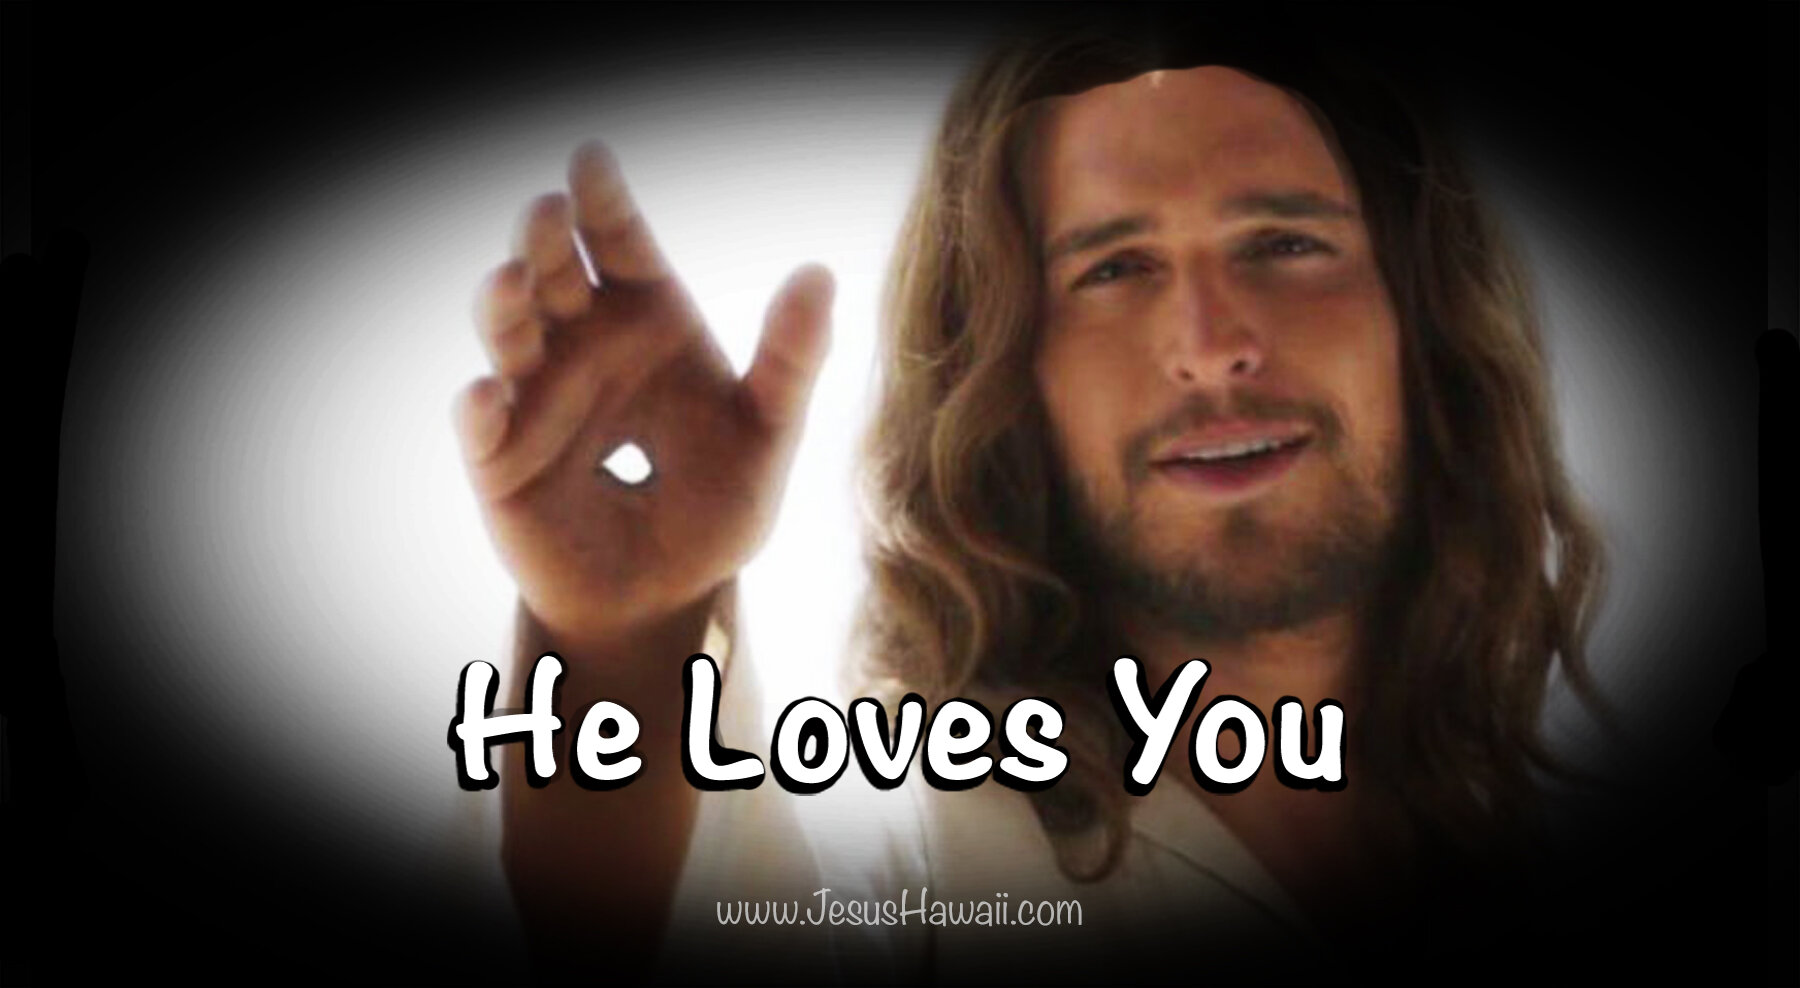 O Lord Jesus, I love You! I really love You!